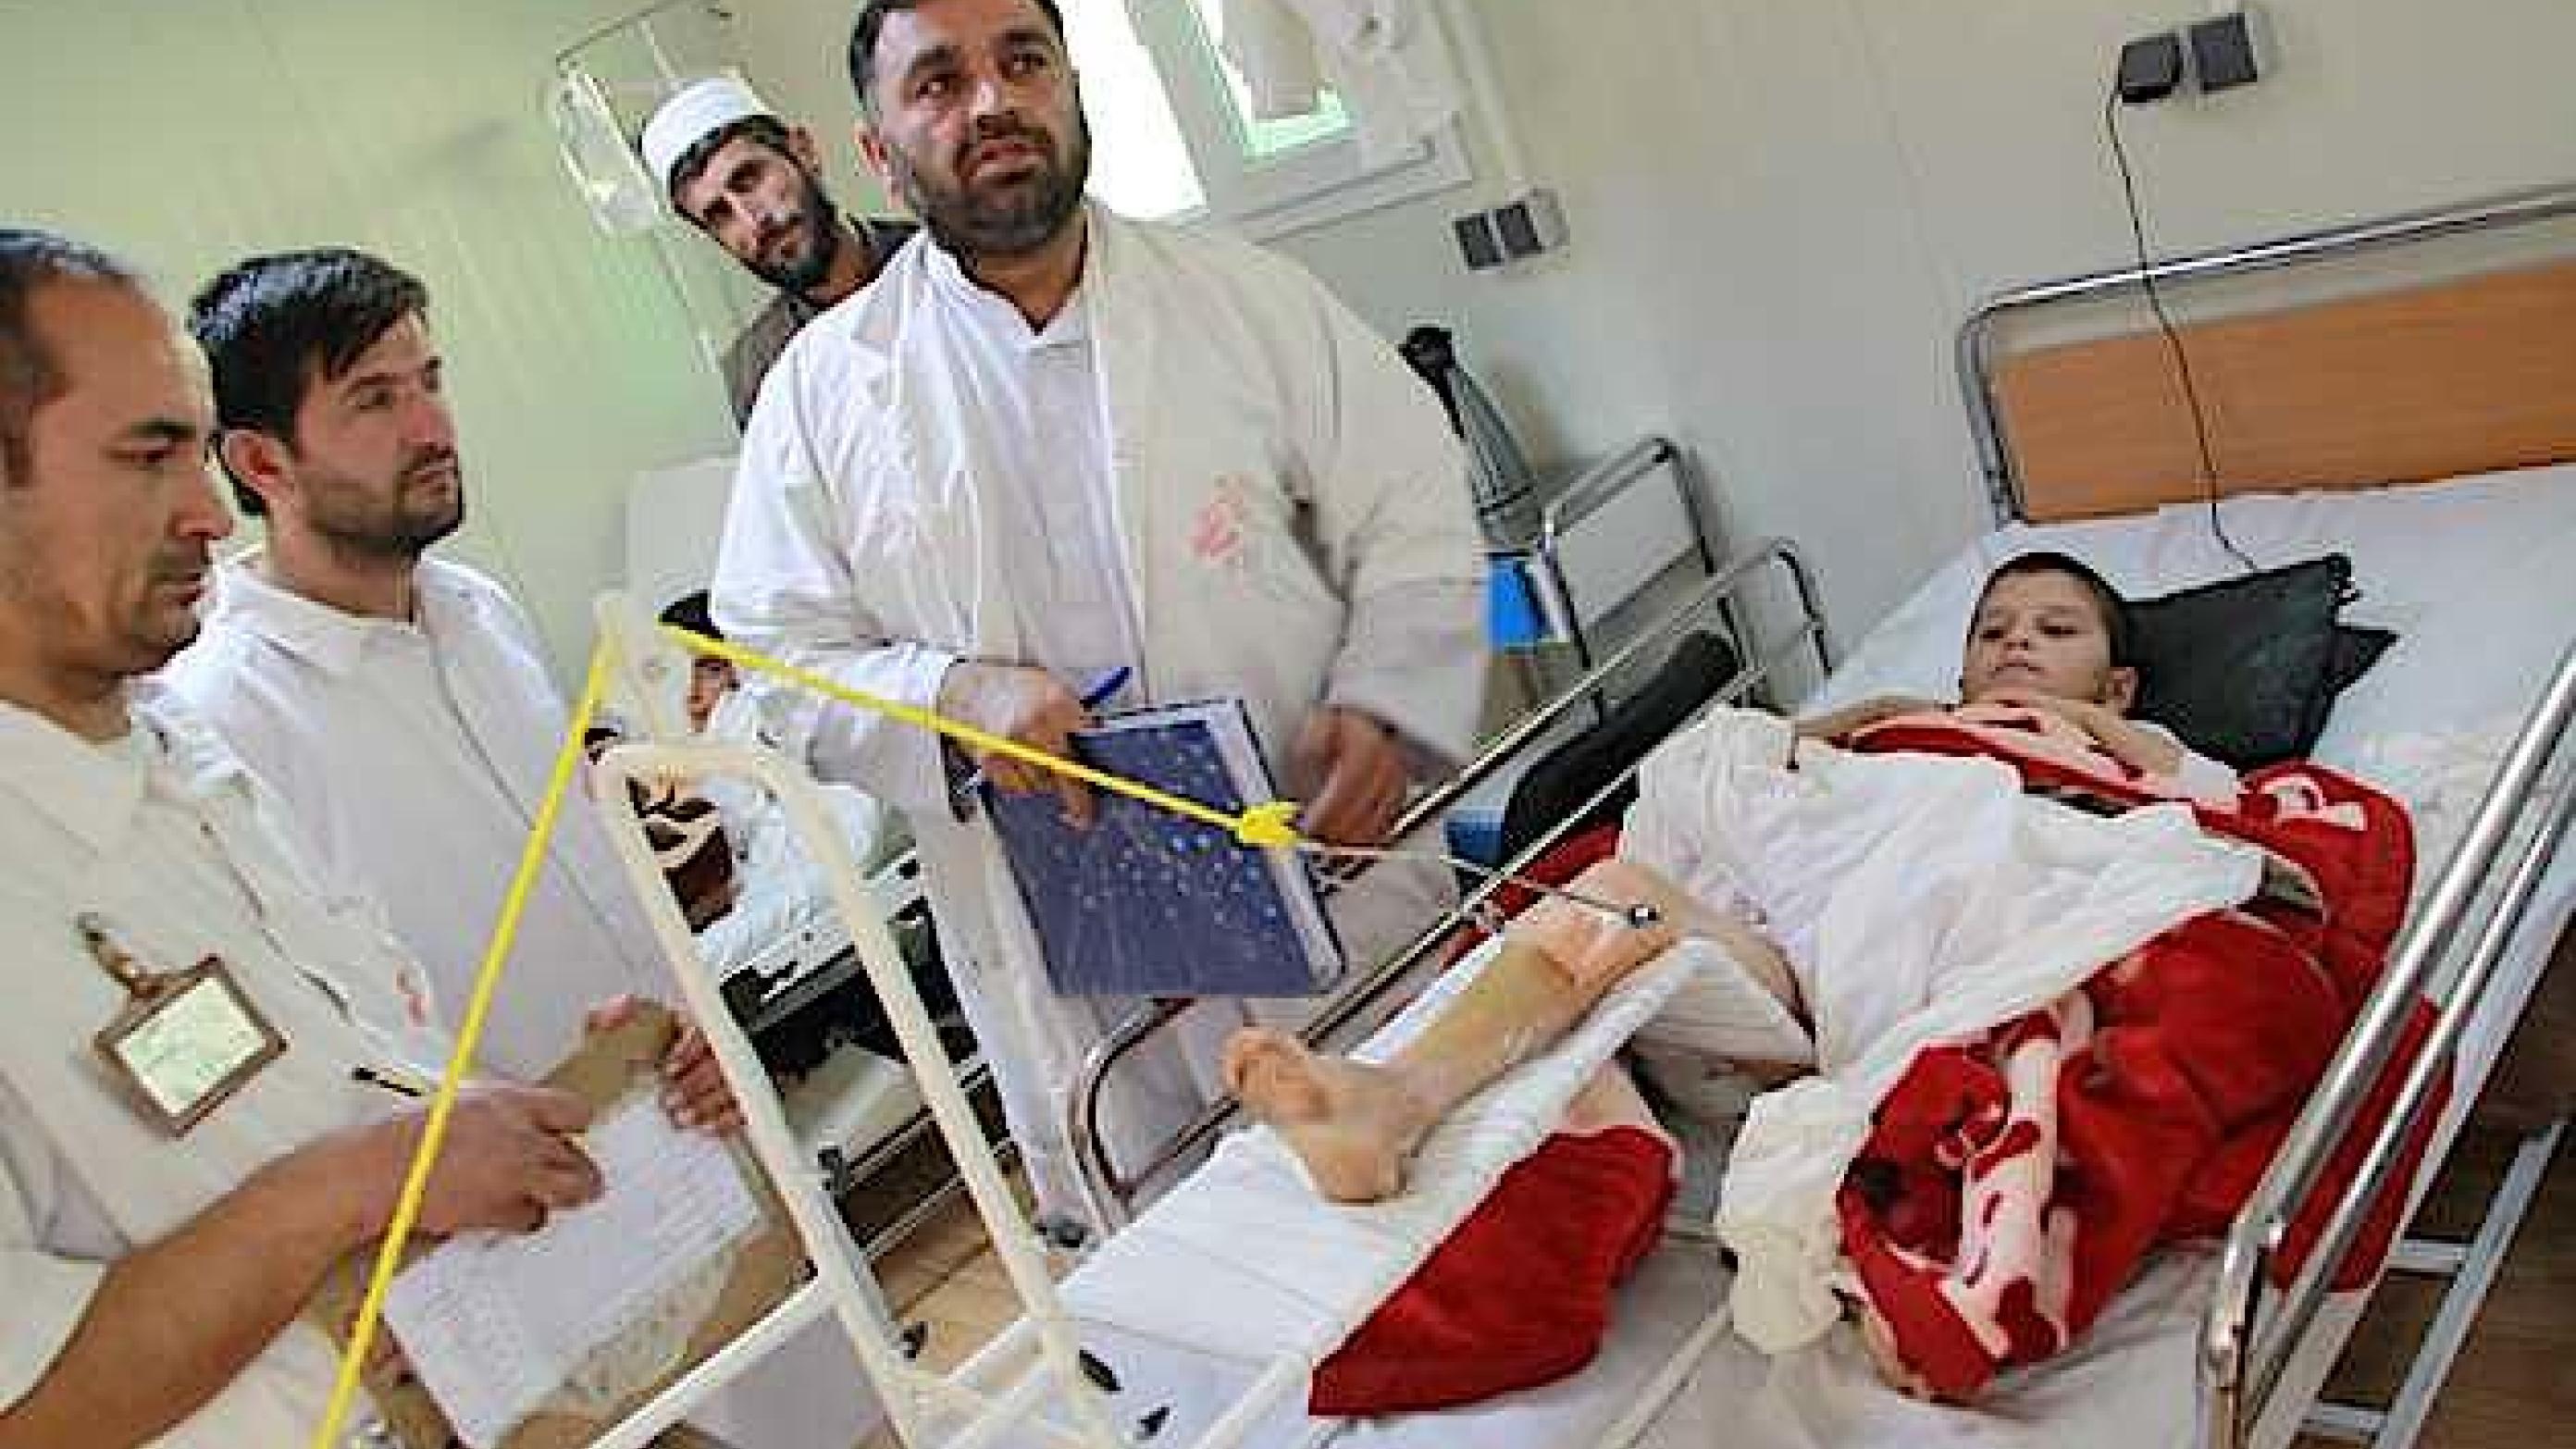 Stuegang med afghansk læge, sygeplejerske og fysioterapeut. I baggrunden en ”caretaker” for nabopatienten. Caretaker'en er en pårørende, der tager sig af patientens basale pleje. (Privatfoto)